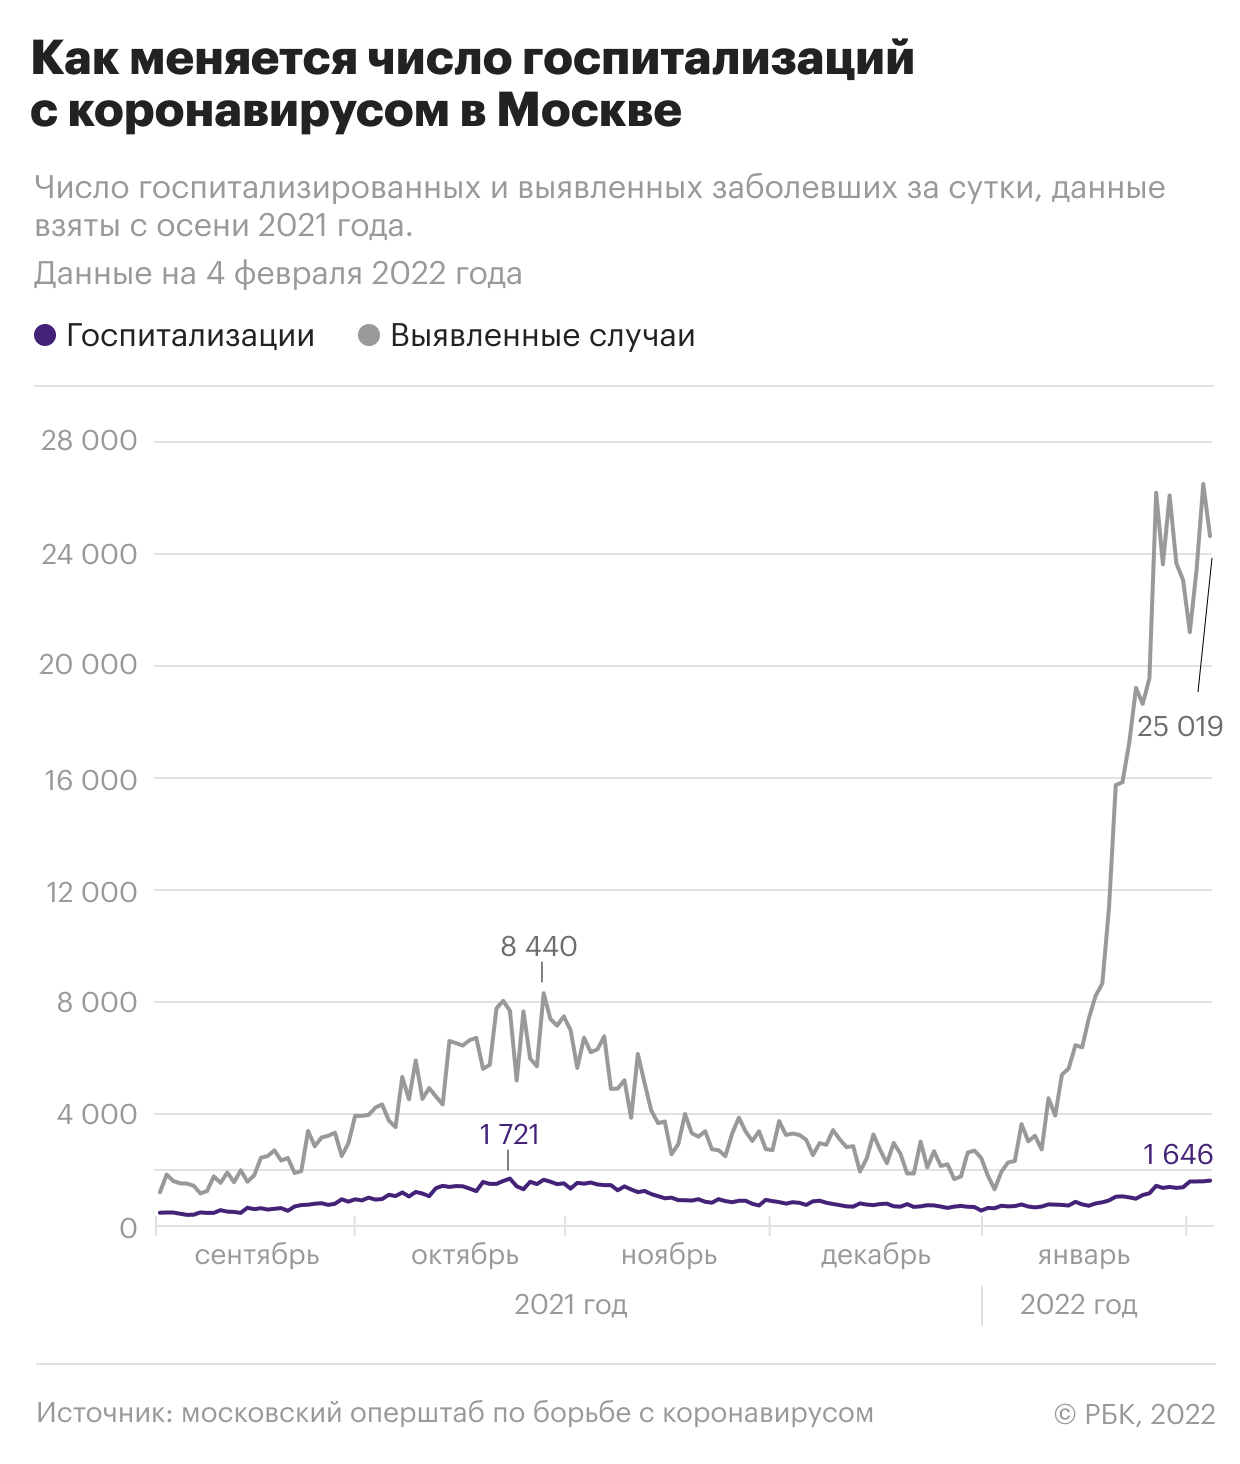 Как меняется число госпитализаций с коронавирусом в России. Инфографика